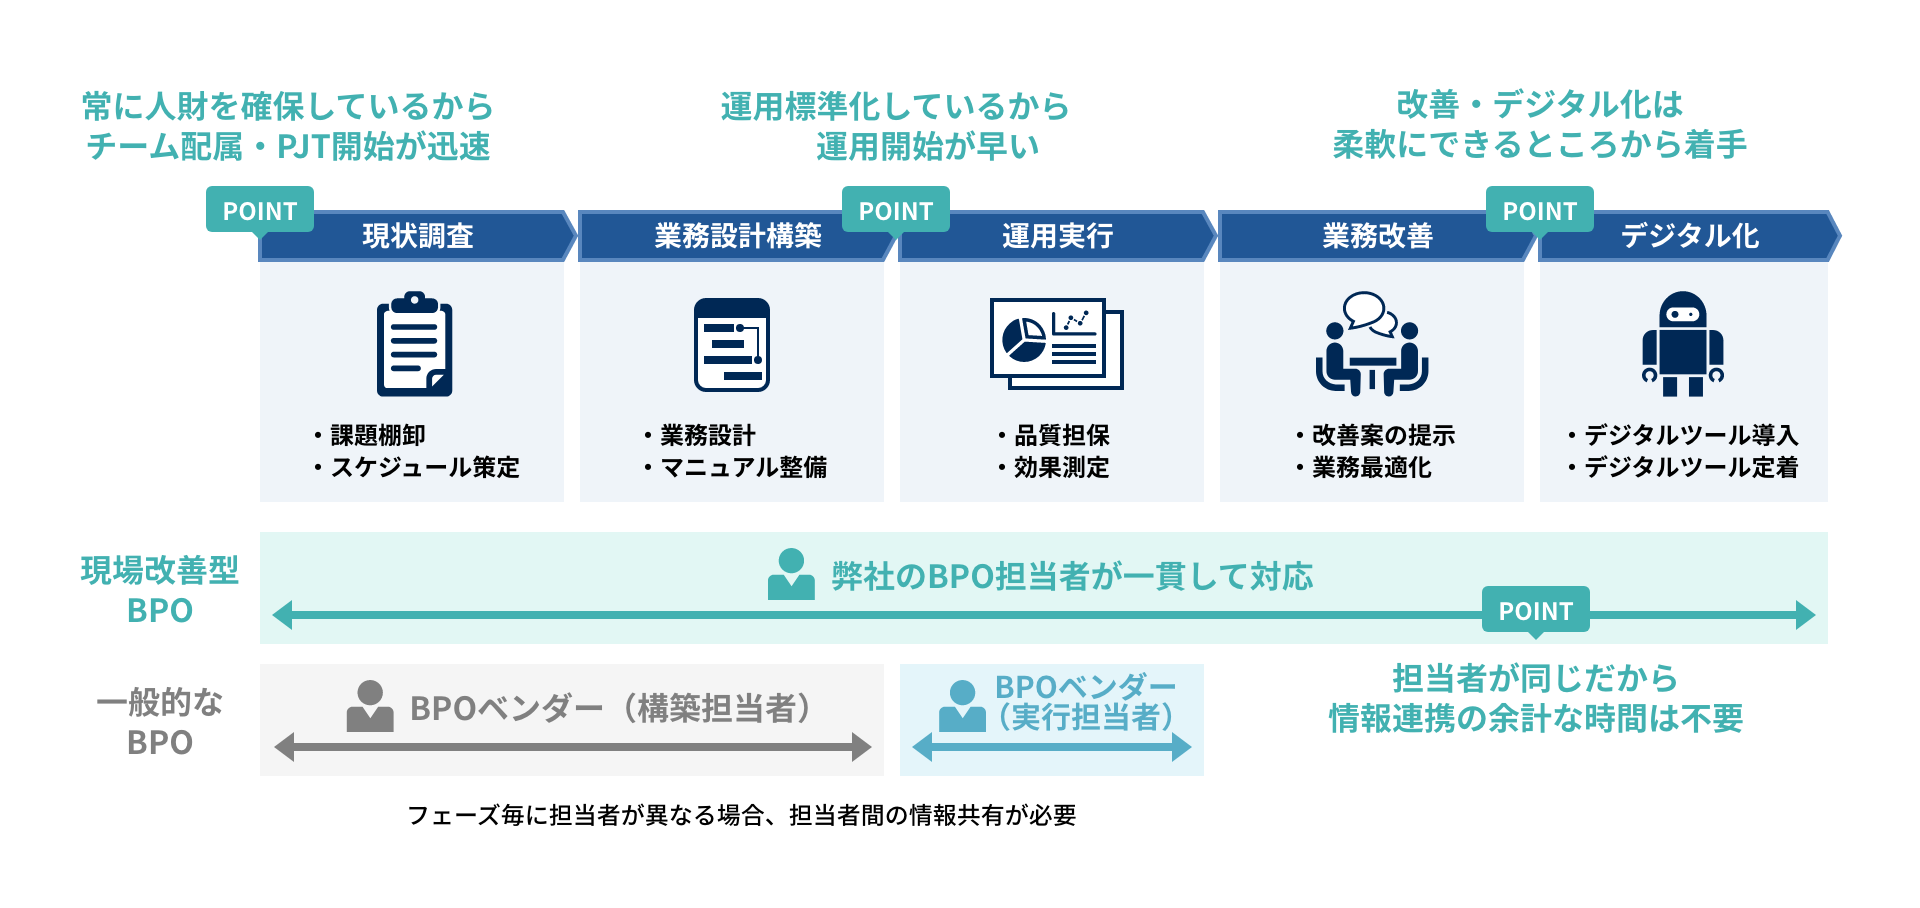 総務人事領域BPOの事例のプロジェクトの進め方のイメージ図